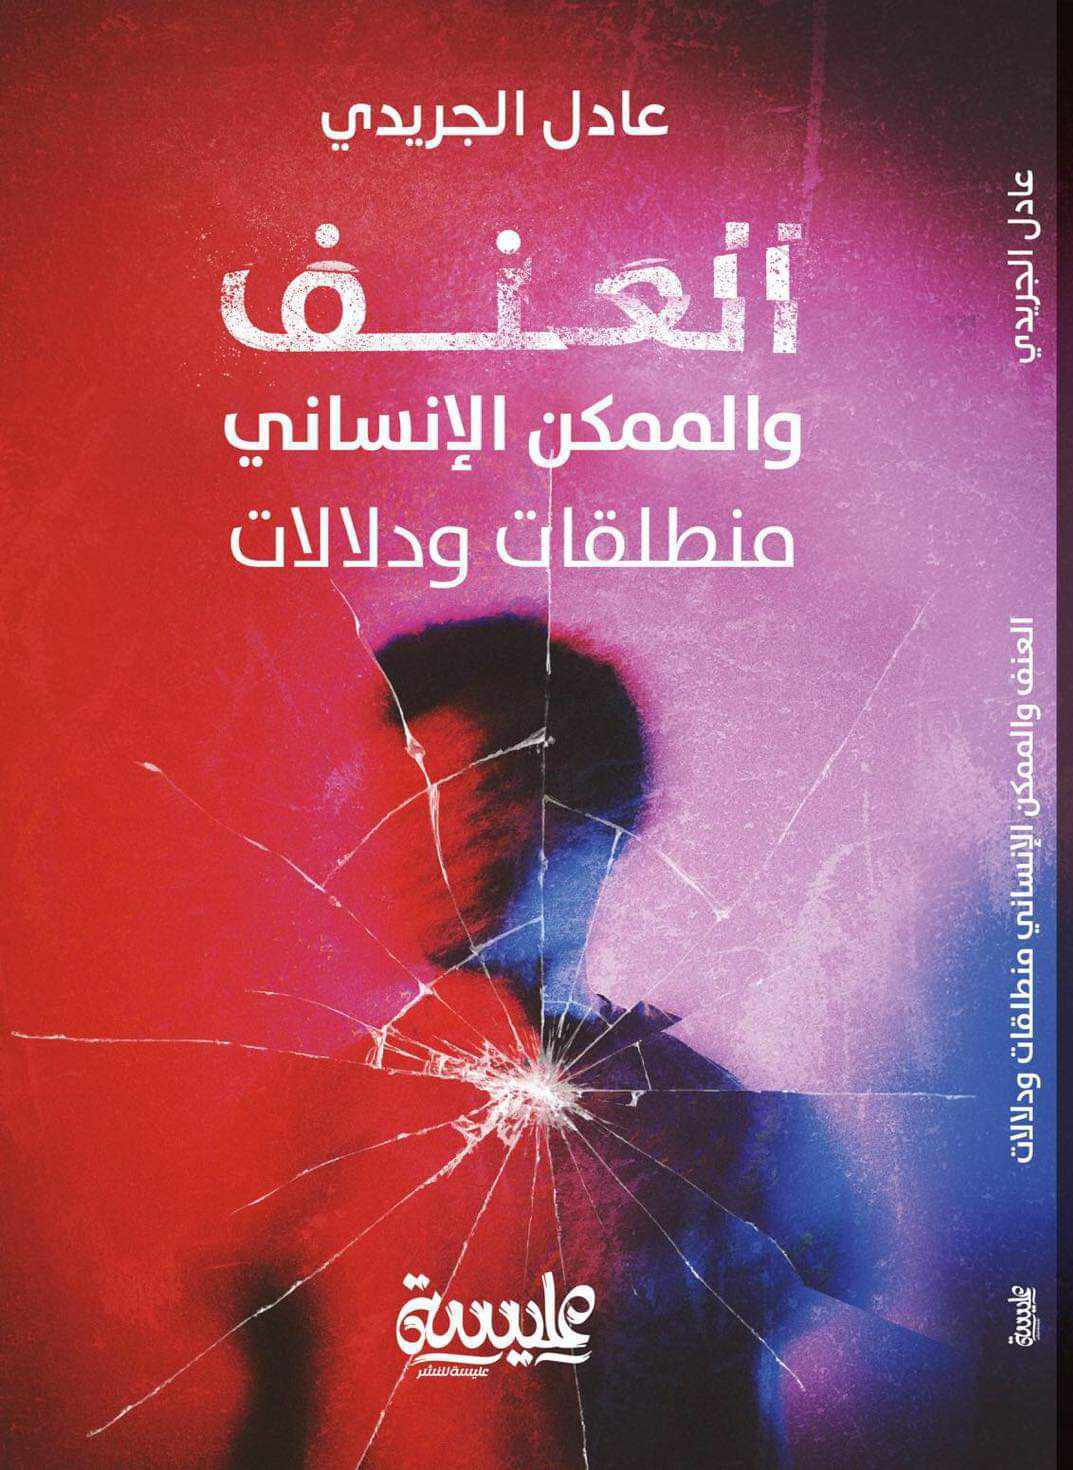 من دار عليسة للنشر: كتاب جديد يلقي الضوء على "العنف و الممكن الانساني"